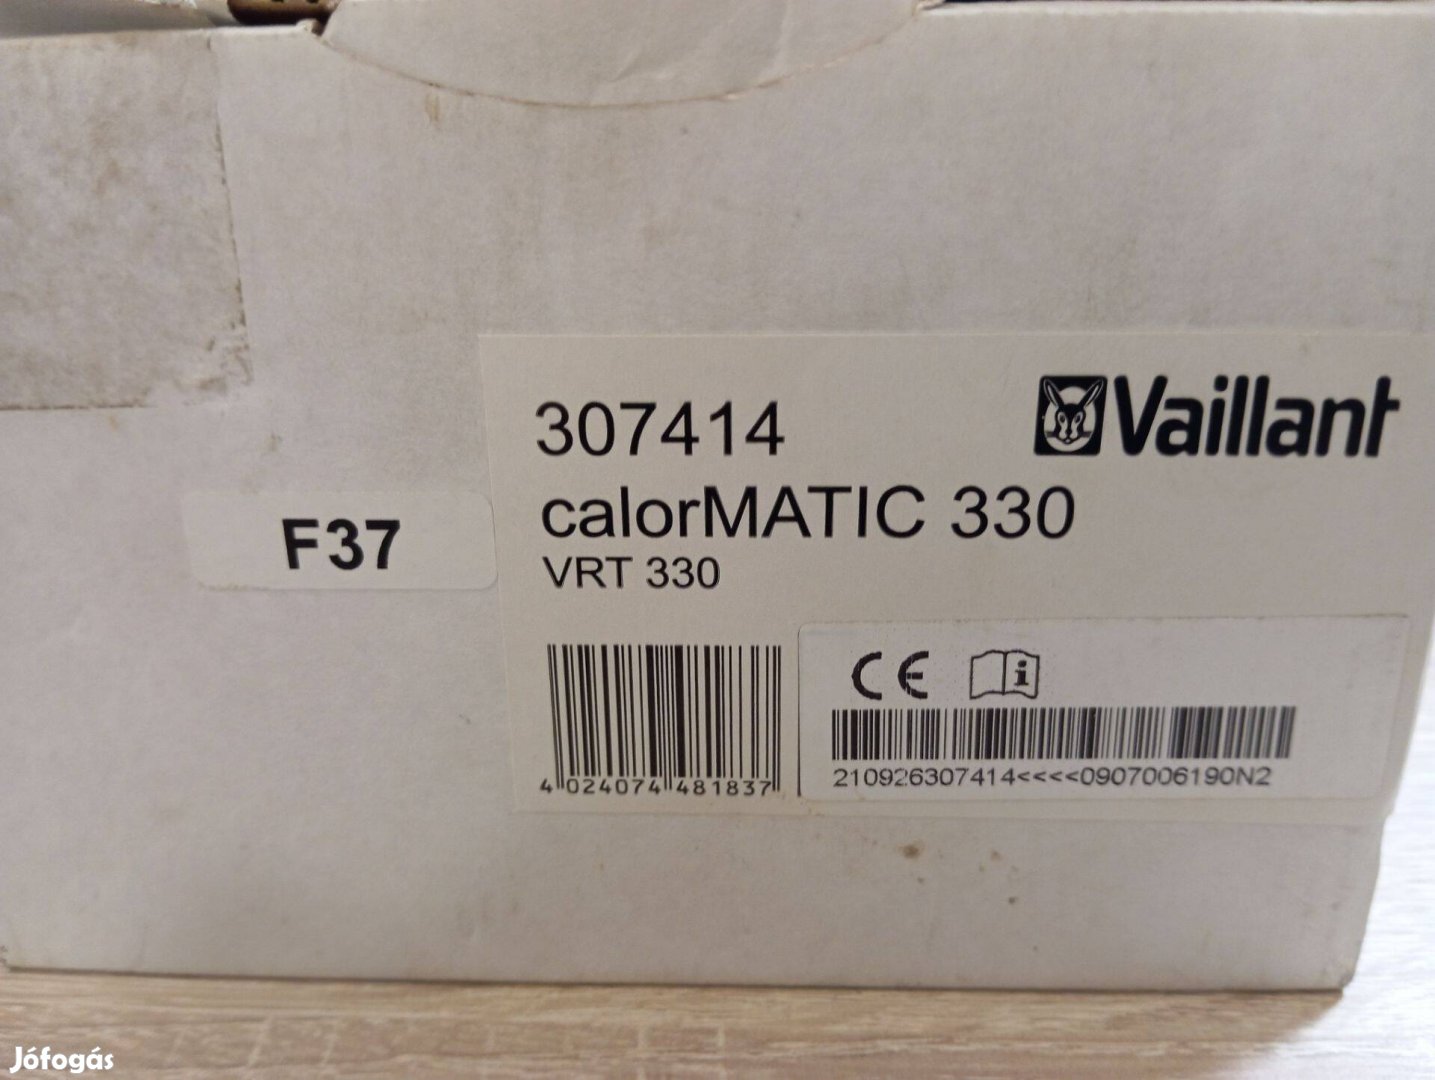 Vaillant Vrt 330 (calormatic 330) digitális termosztát eladó